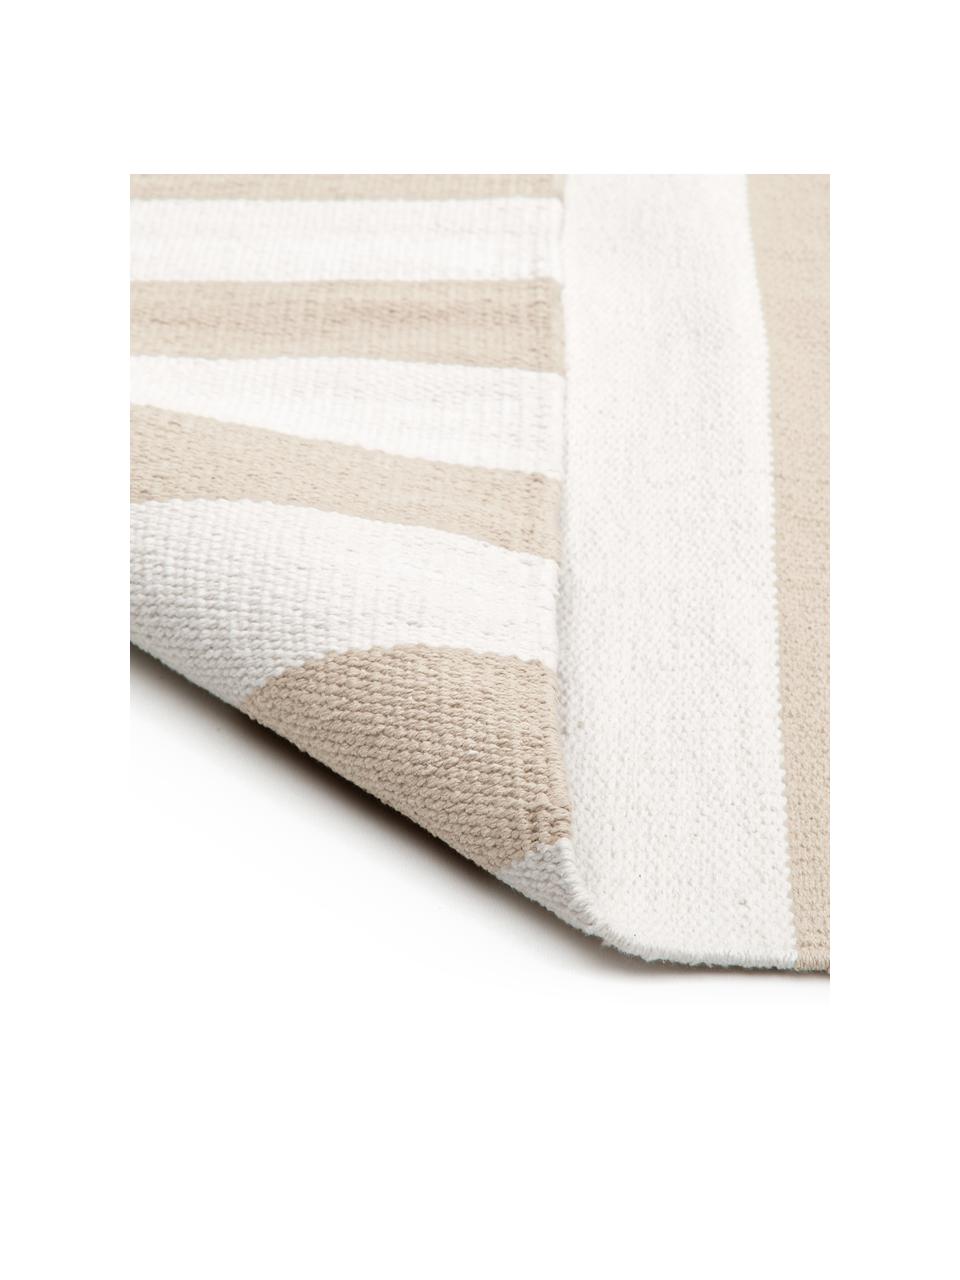 Tappeto in cotone a righe tessuto a mano Blocker, 100% cotone, Bianco crema/beige, Larg. 200 x Lung. 300 cm (taglia L)